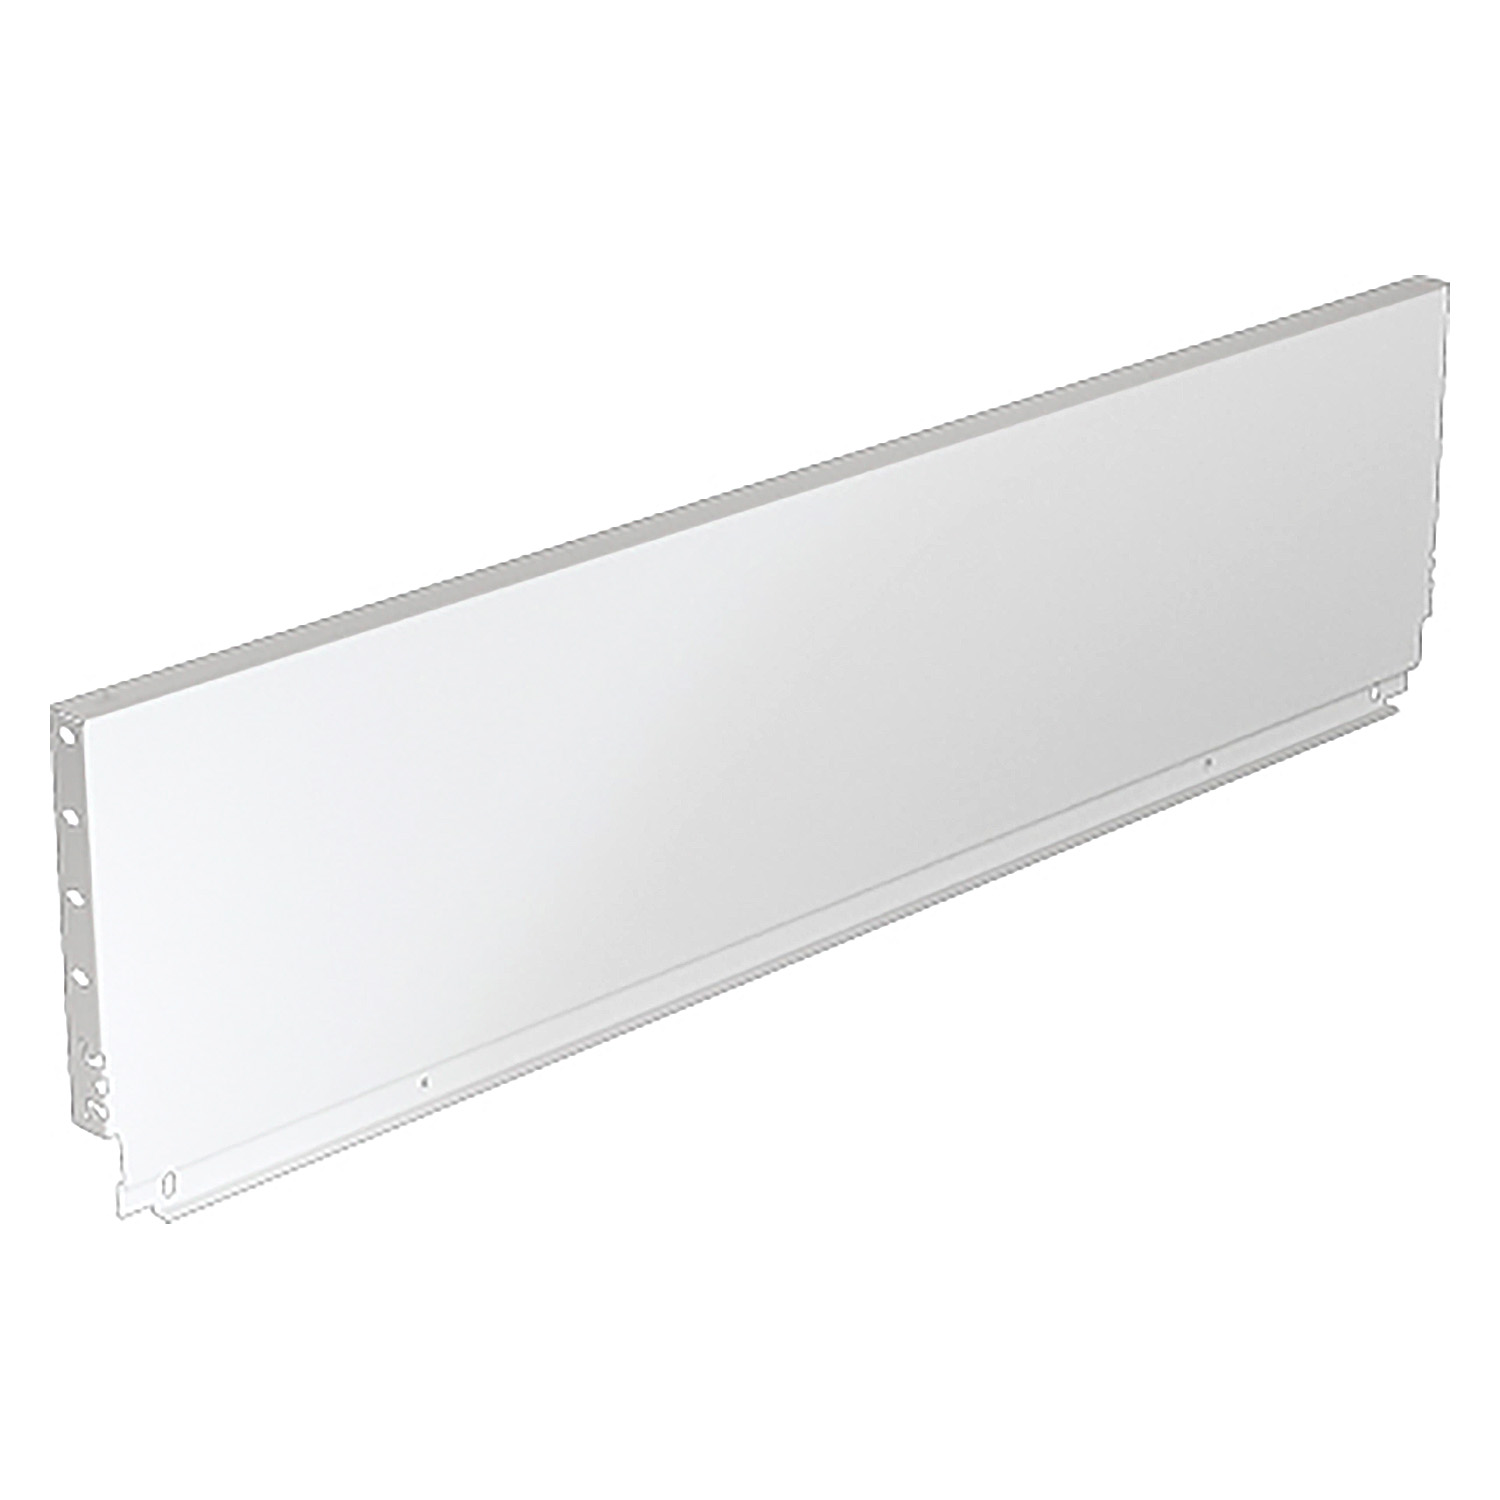 HETTICH Stahlrückwand ArciTech, 218 x 300 mm, weiß, 9121610